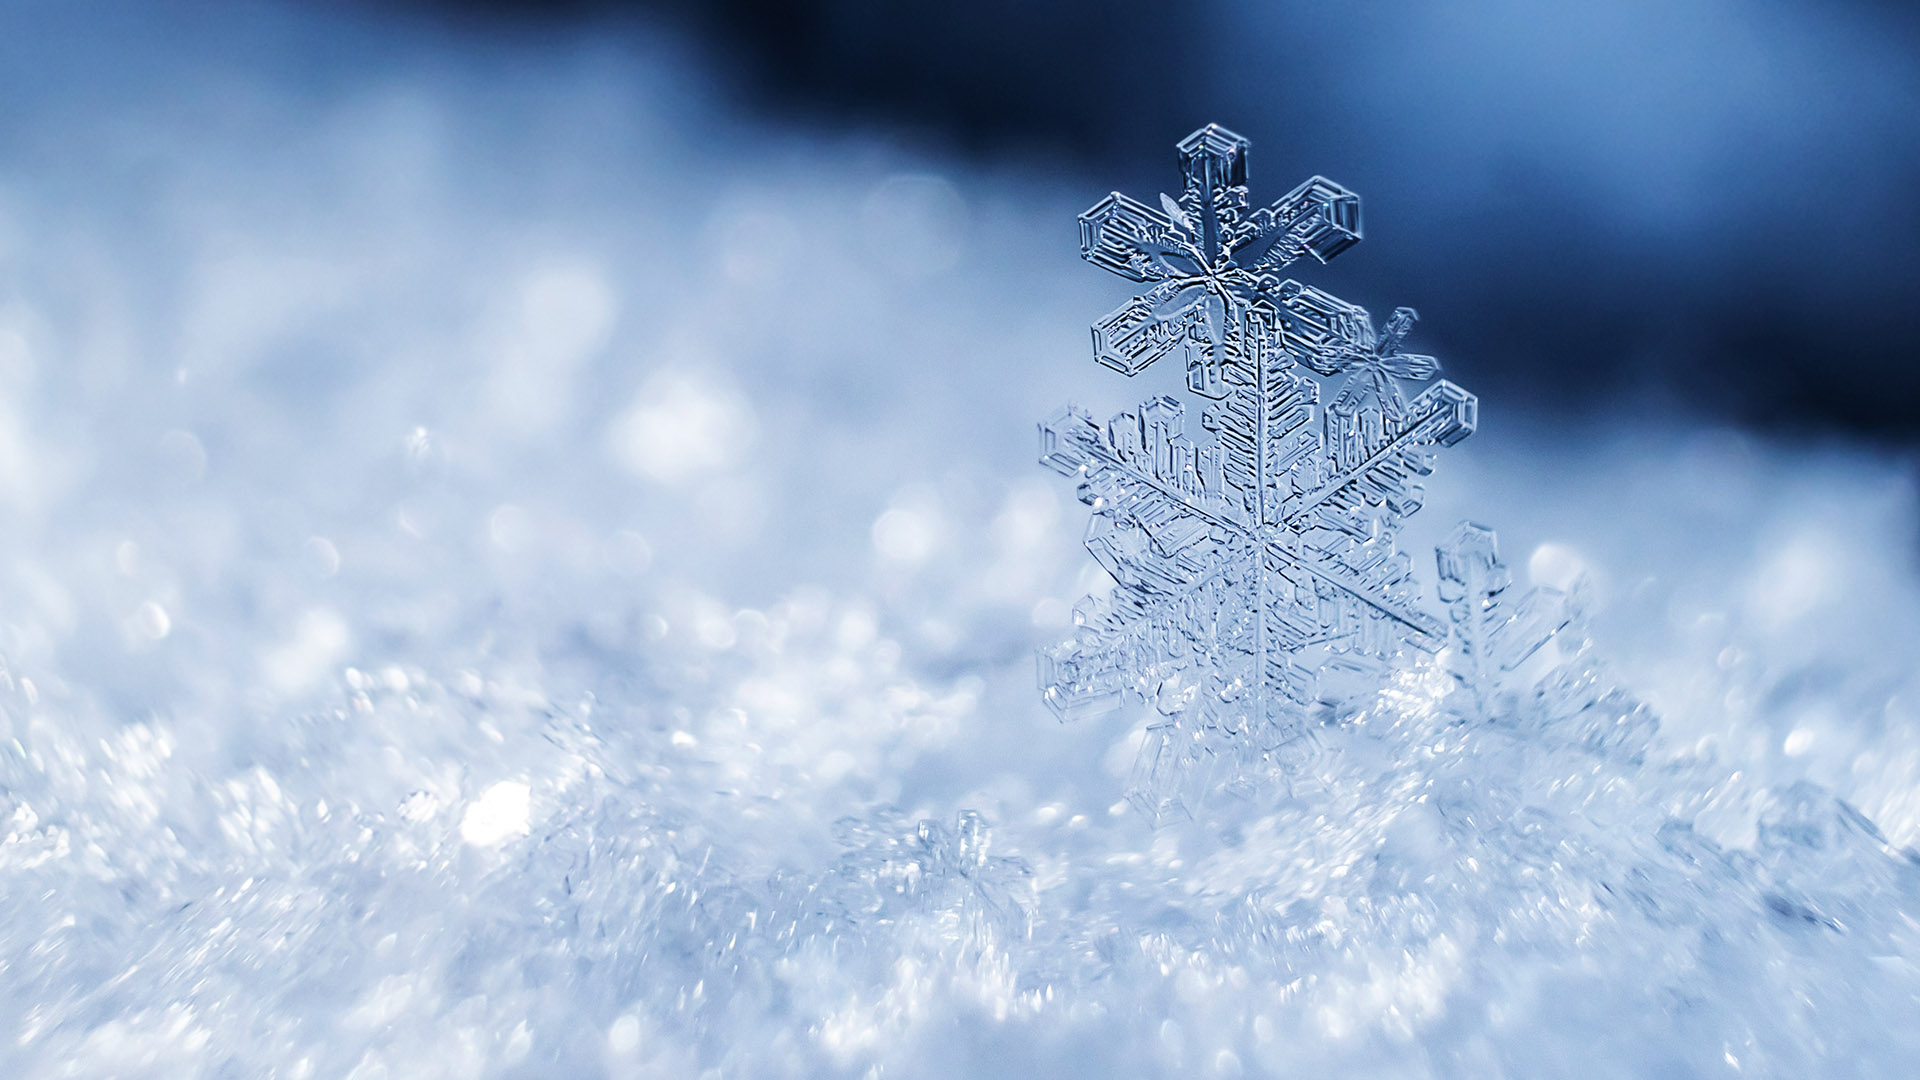 ¿Qué relación hay entre los cristales de nieve y la nieve en general?